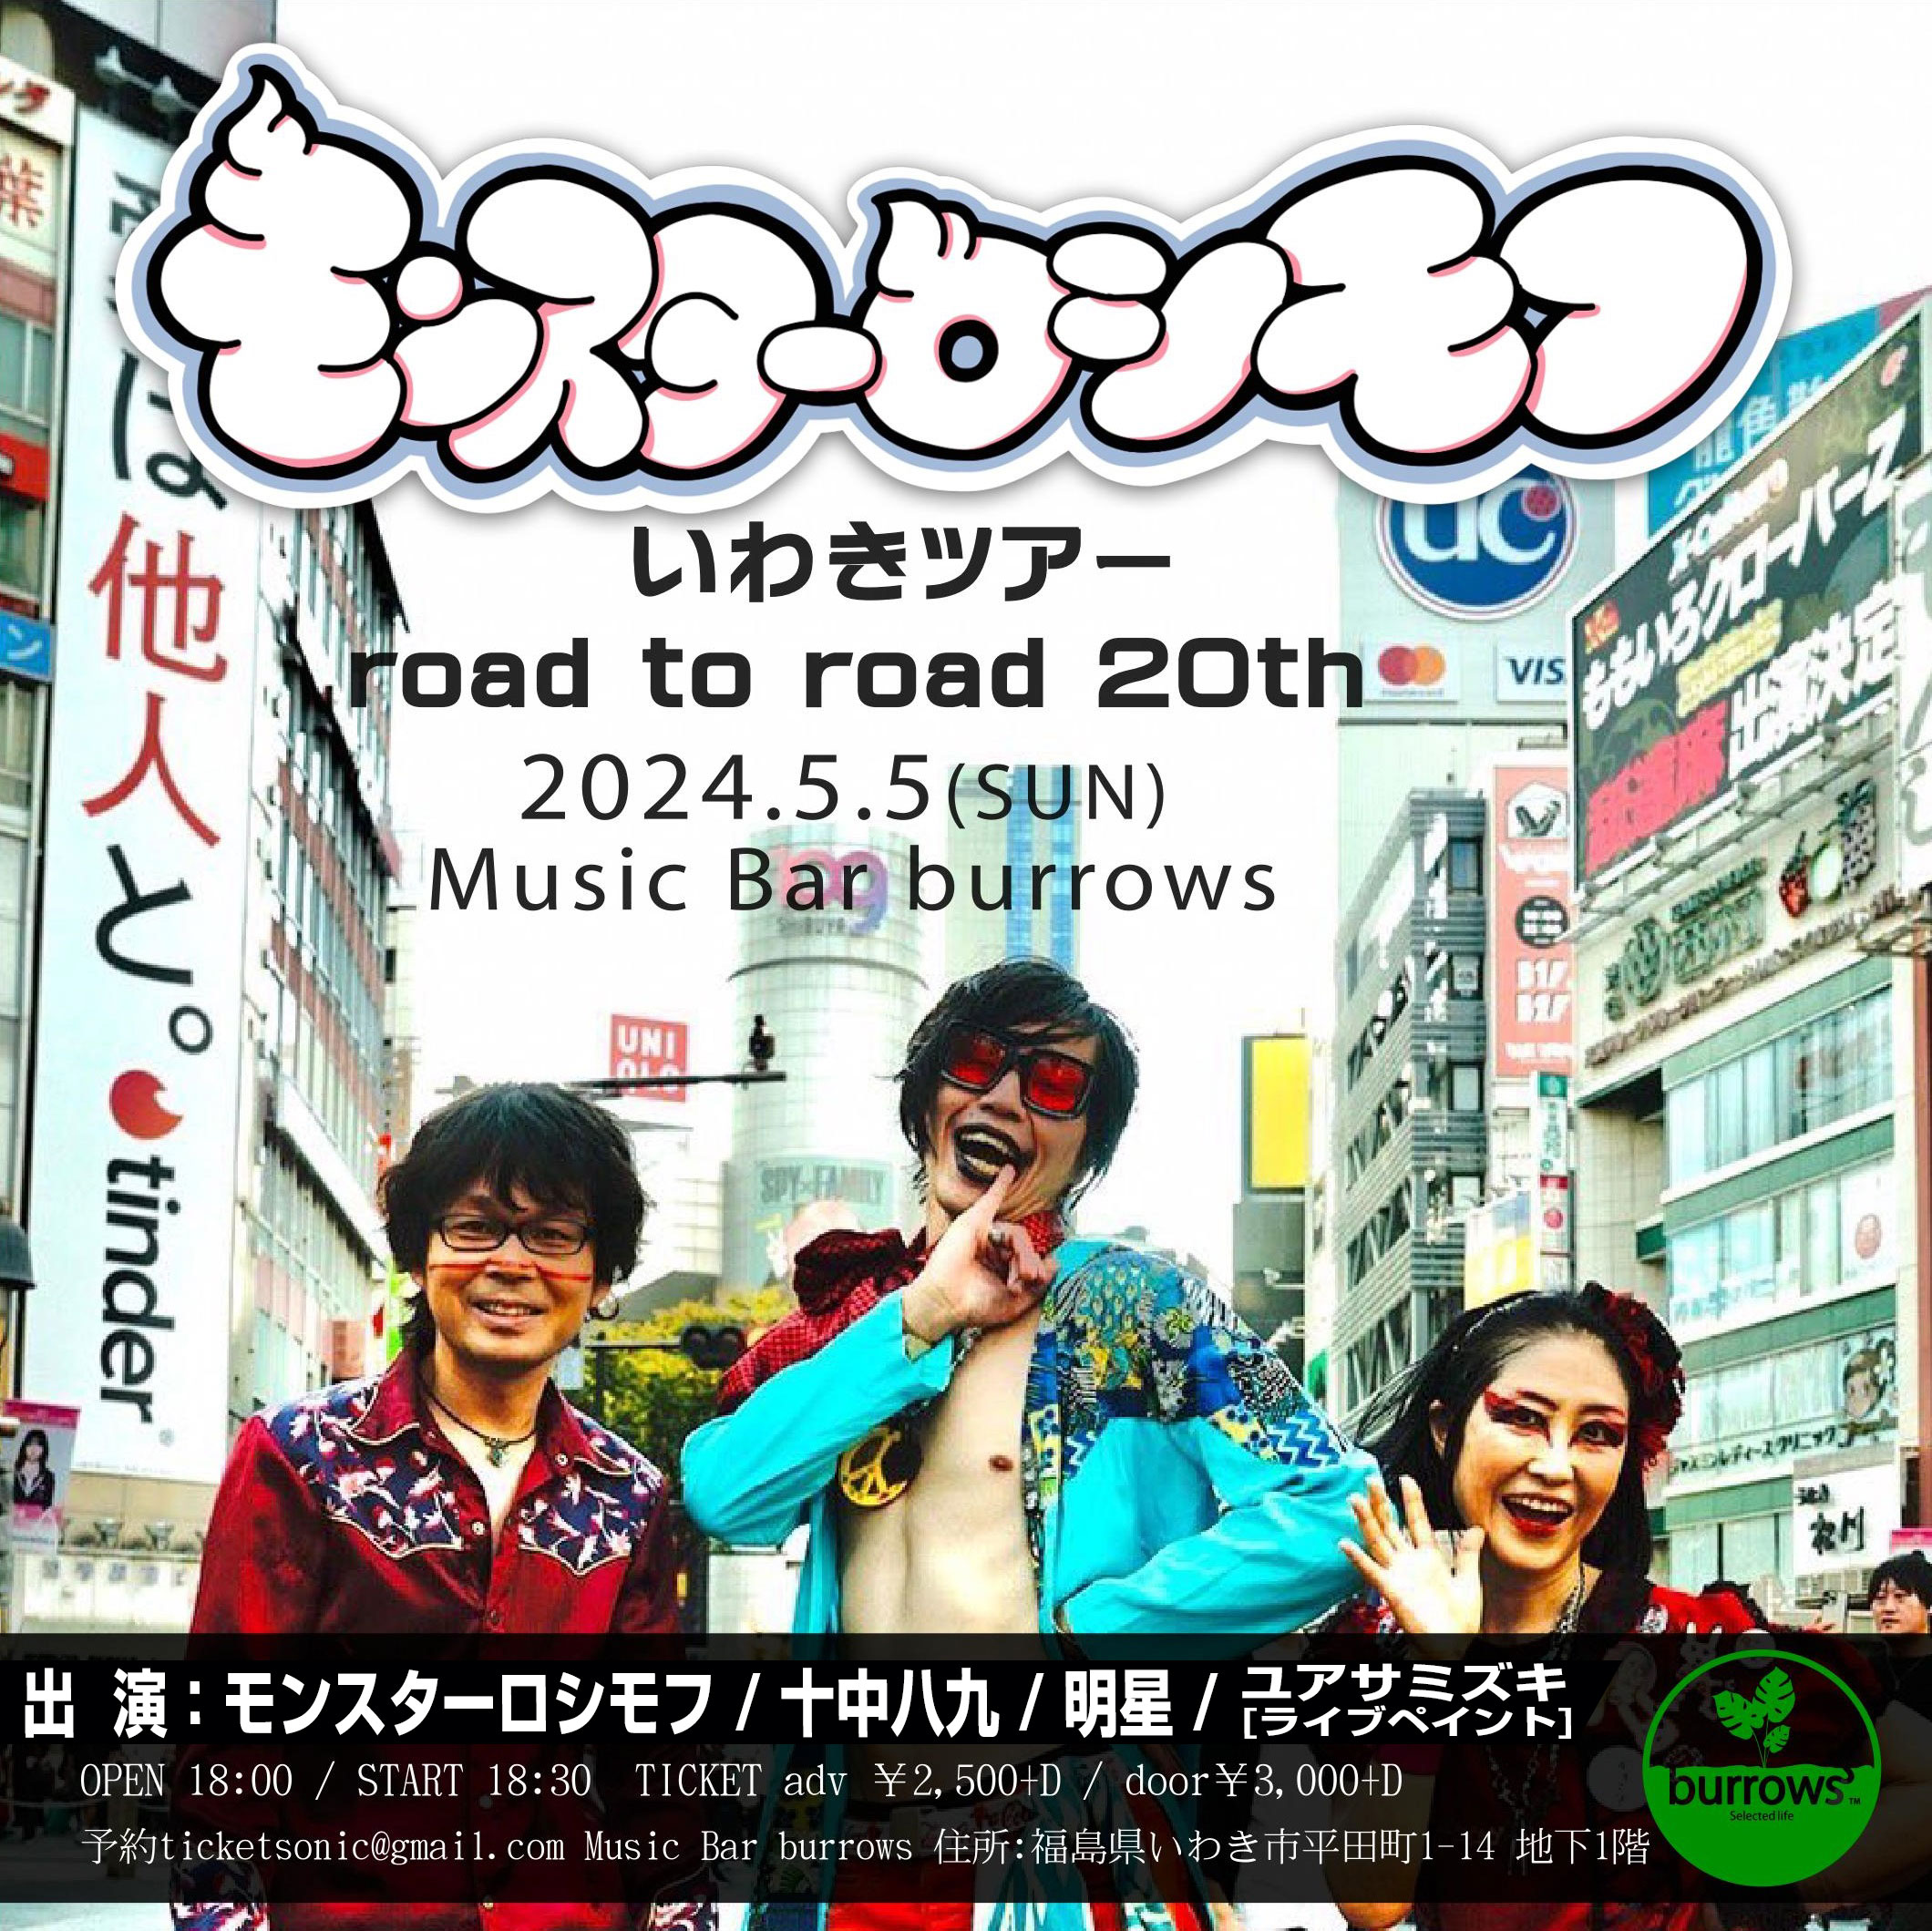 [LIVE / Report] 2024年5月5日(日祝) モンスターロシモフいわきツアー road to road 20th